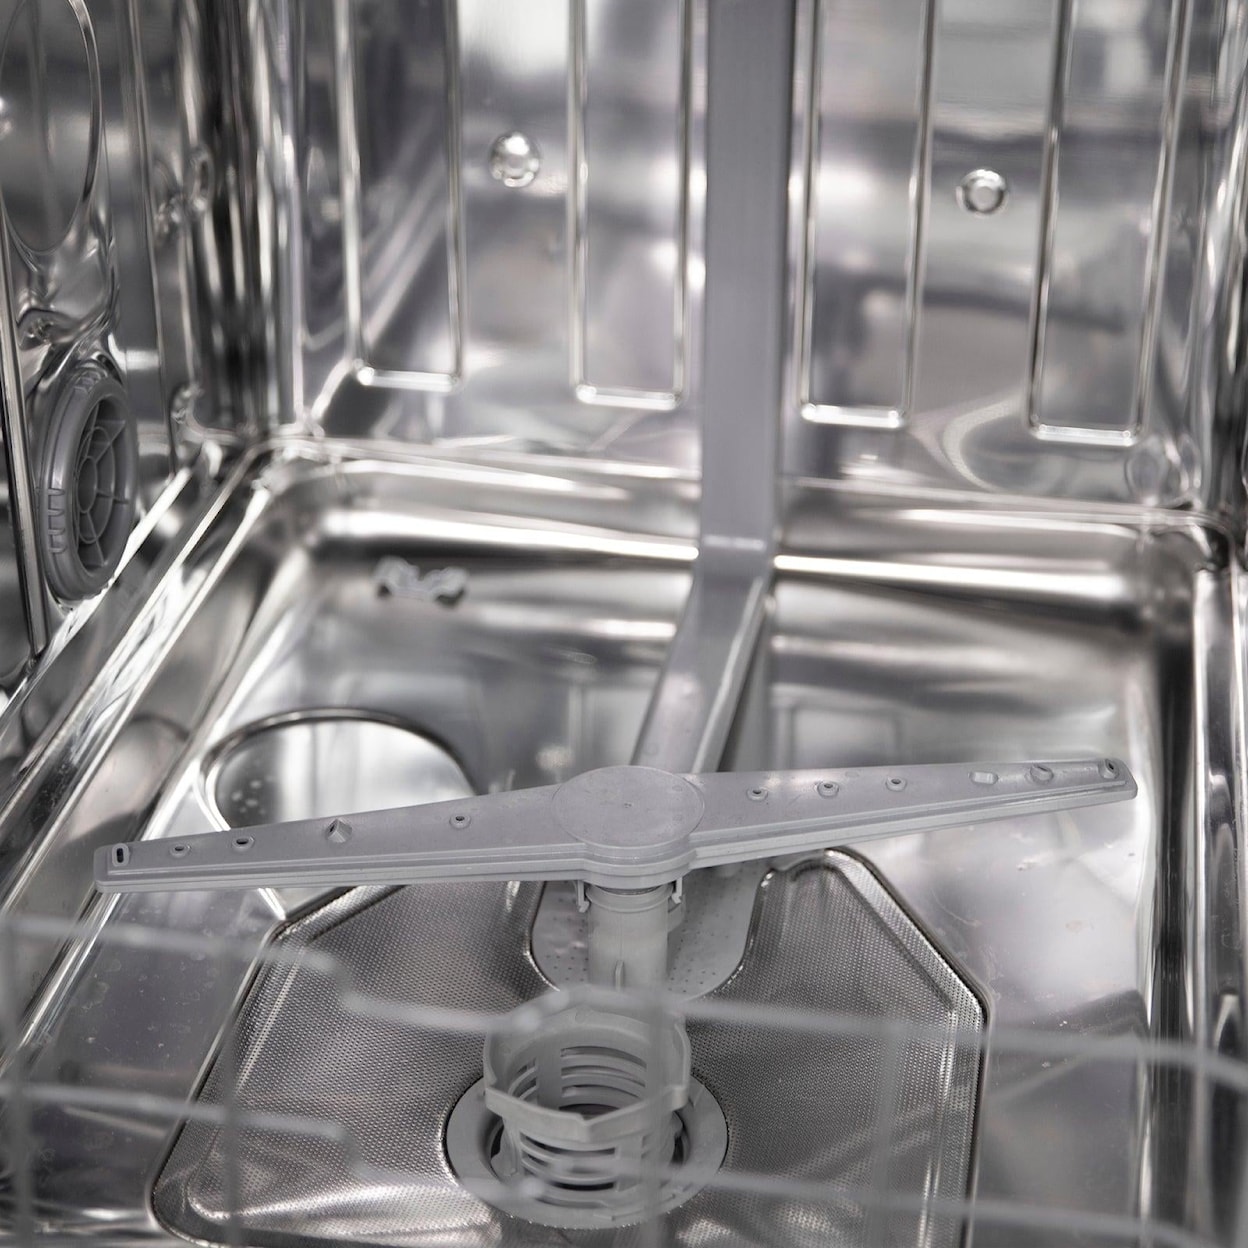 Avanti Dishwashers Dishwasher